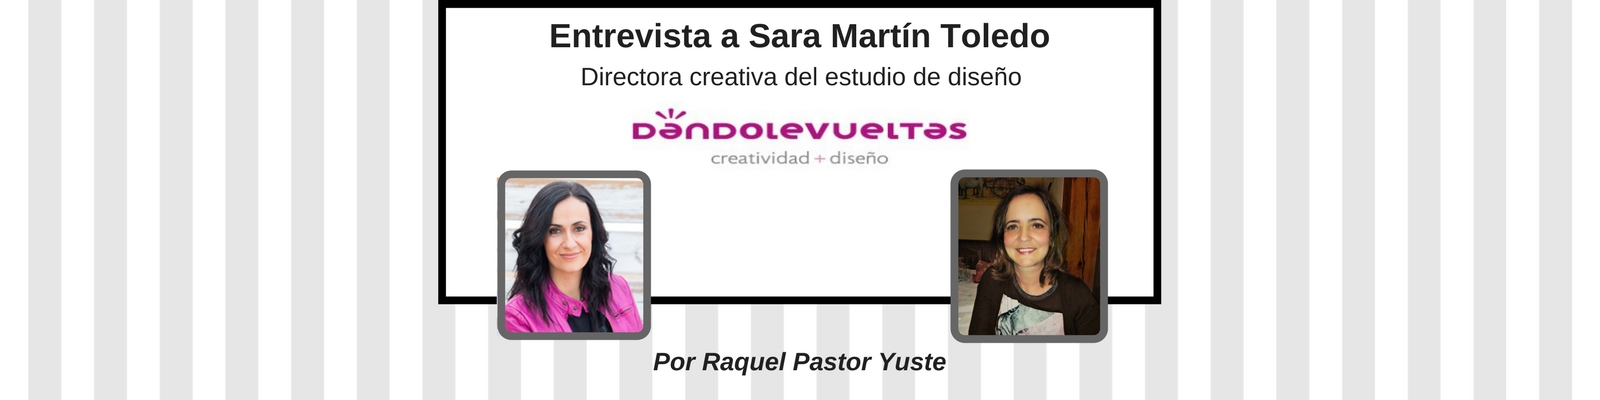 El reto de emprender y conciliar: entrevista a Sara Martín Toledo, Directora creativa del estudio de diseño "Dándolevueltas". Por Raquel Pastor Yuste